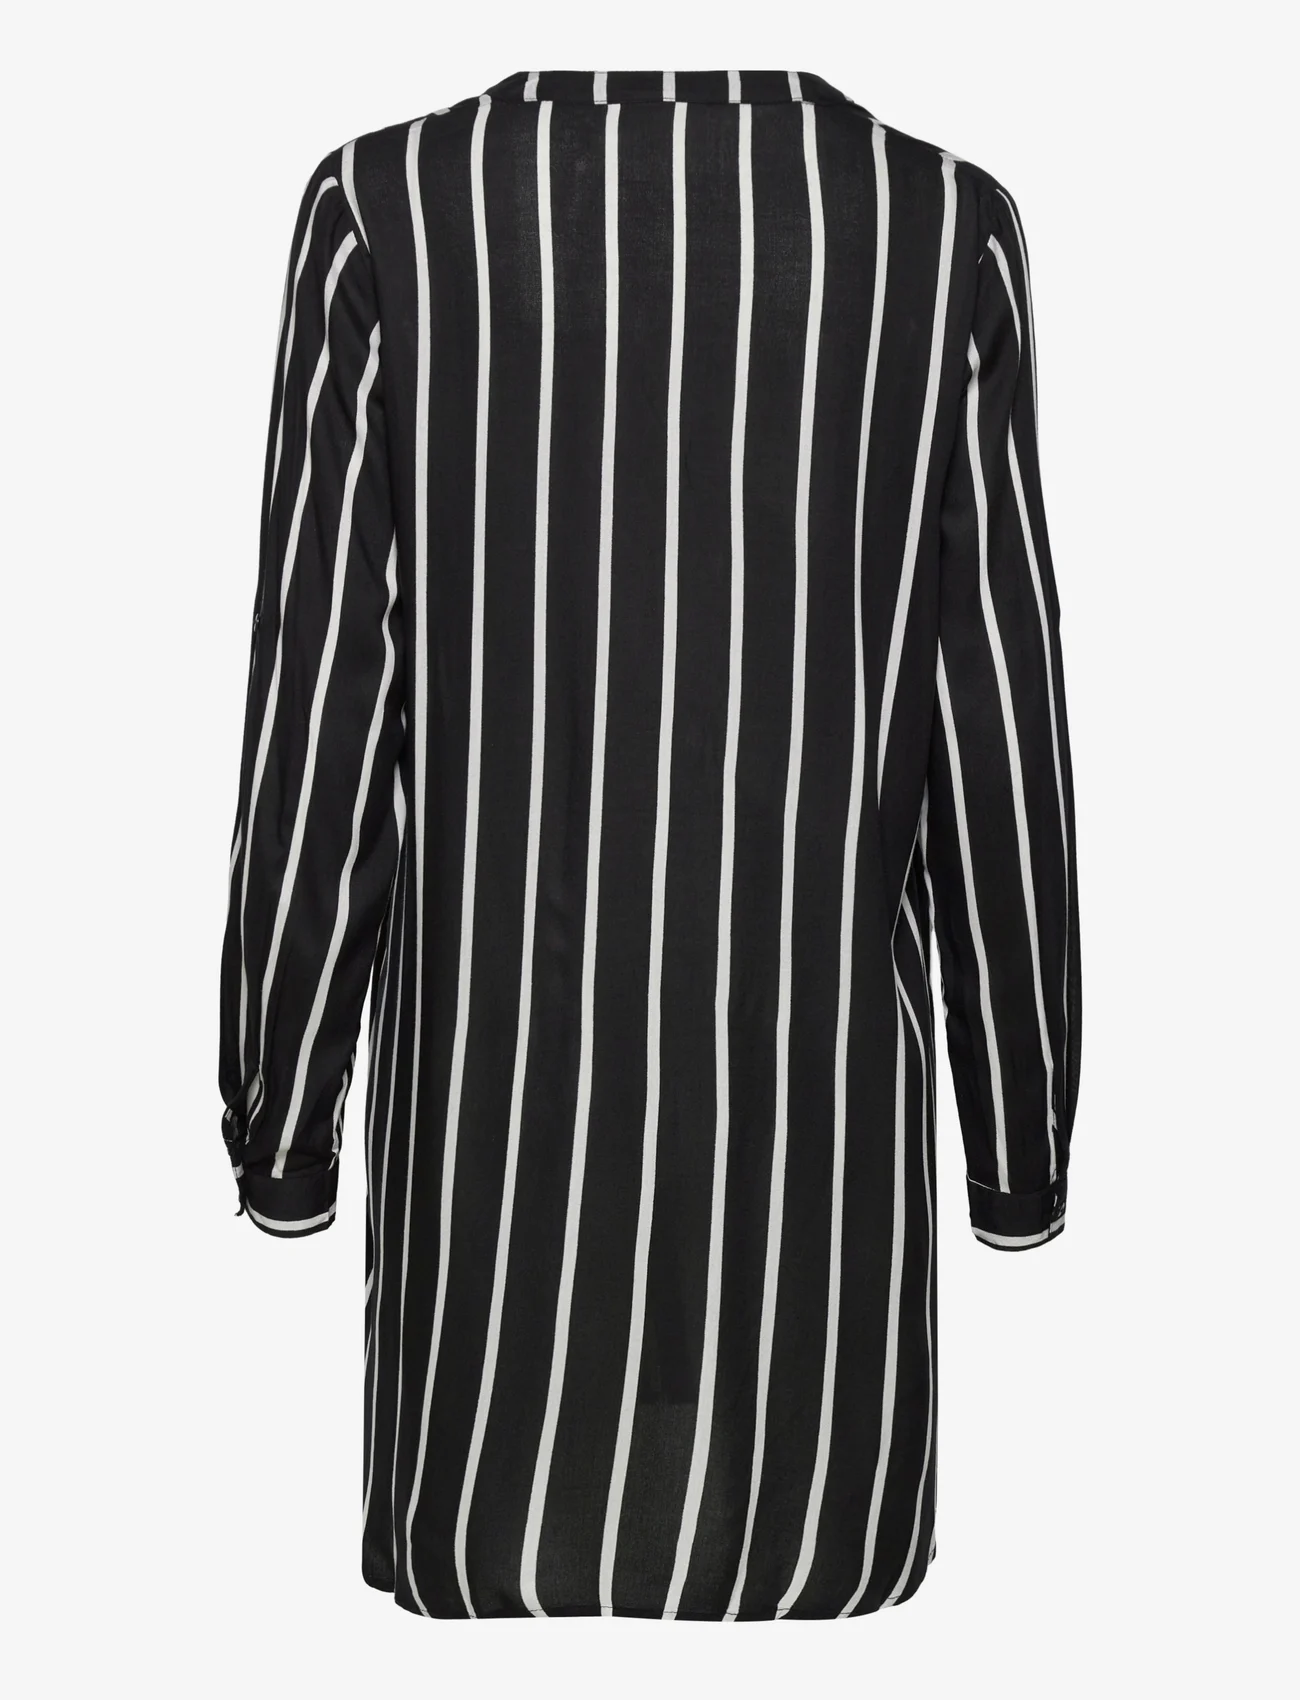 Kaffe - KAmarana Shirt Dress - hemdkleider - black / chalk stripe - 1